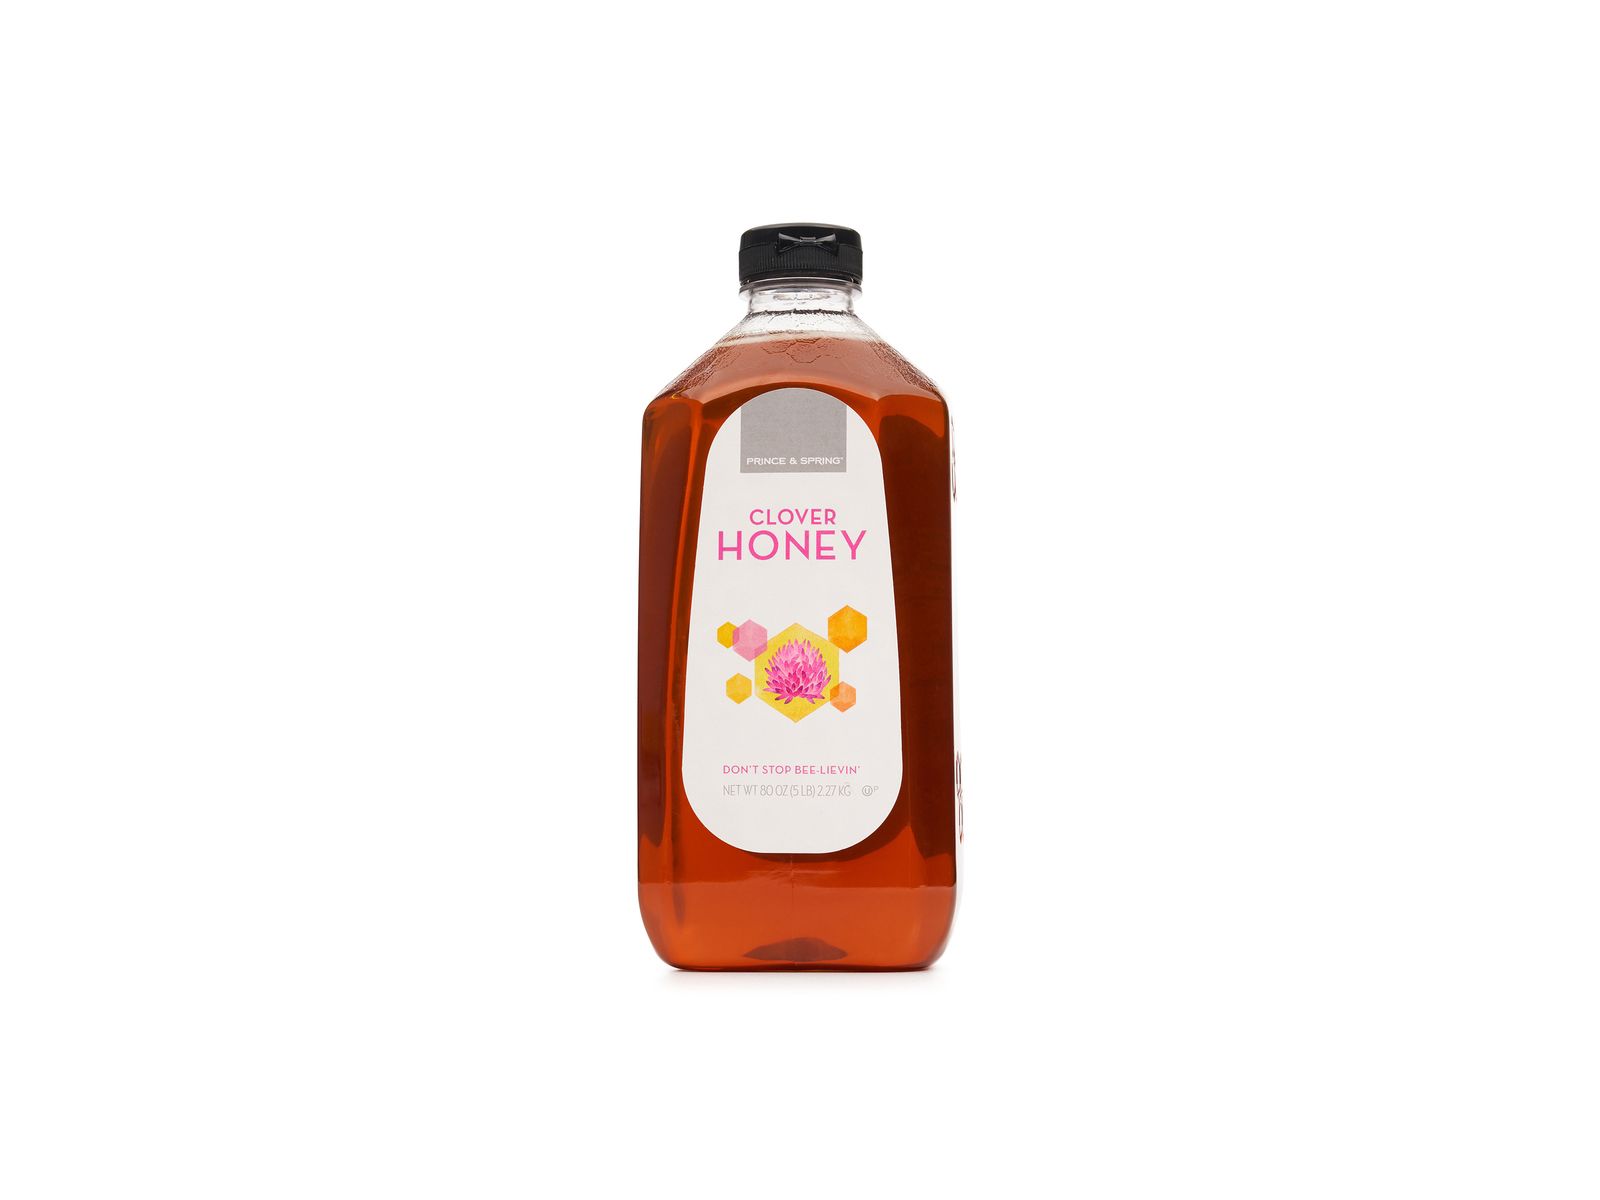 Prince & Spring Clover Honey